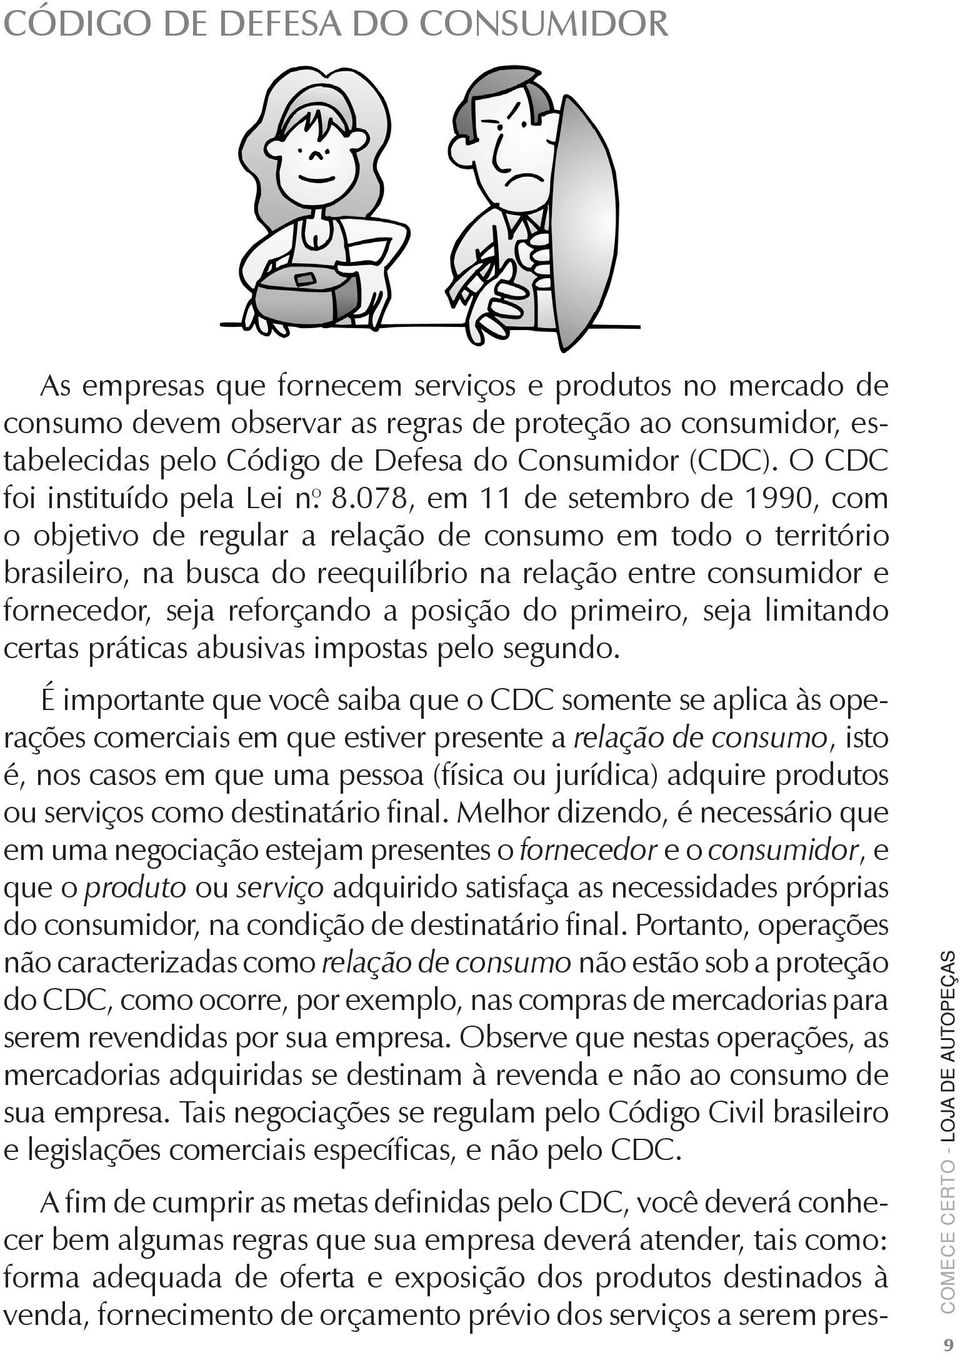 078, em 11 de setembro de 1990, com o objetivo de regular a relação de consumo em todo o território brasileiro, na busca do reequilíbrio na relação entre consumidor e fornecedor, seja reforçando a